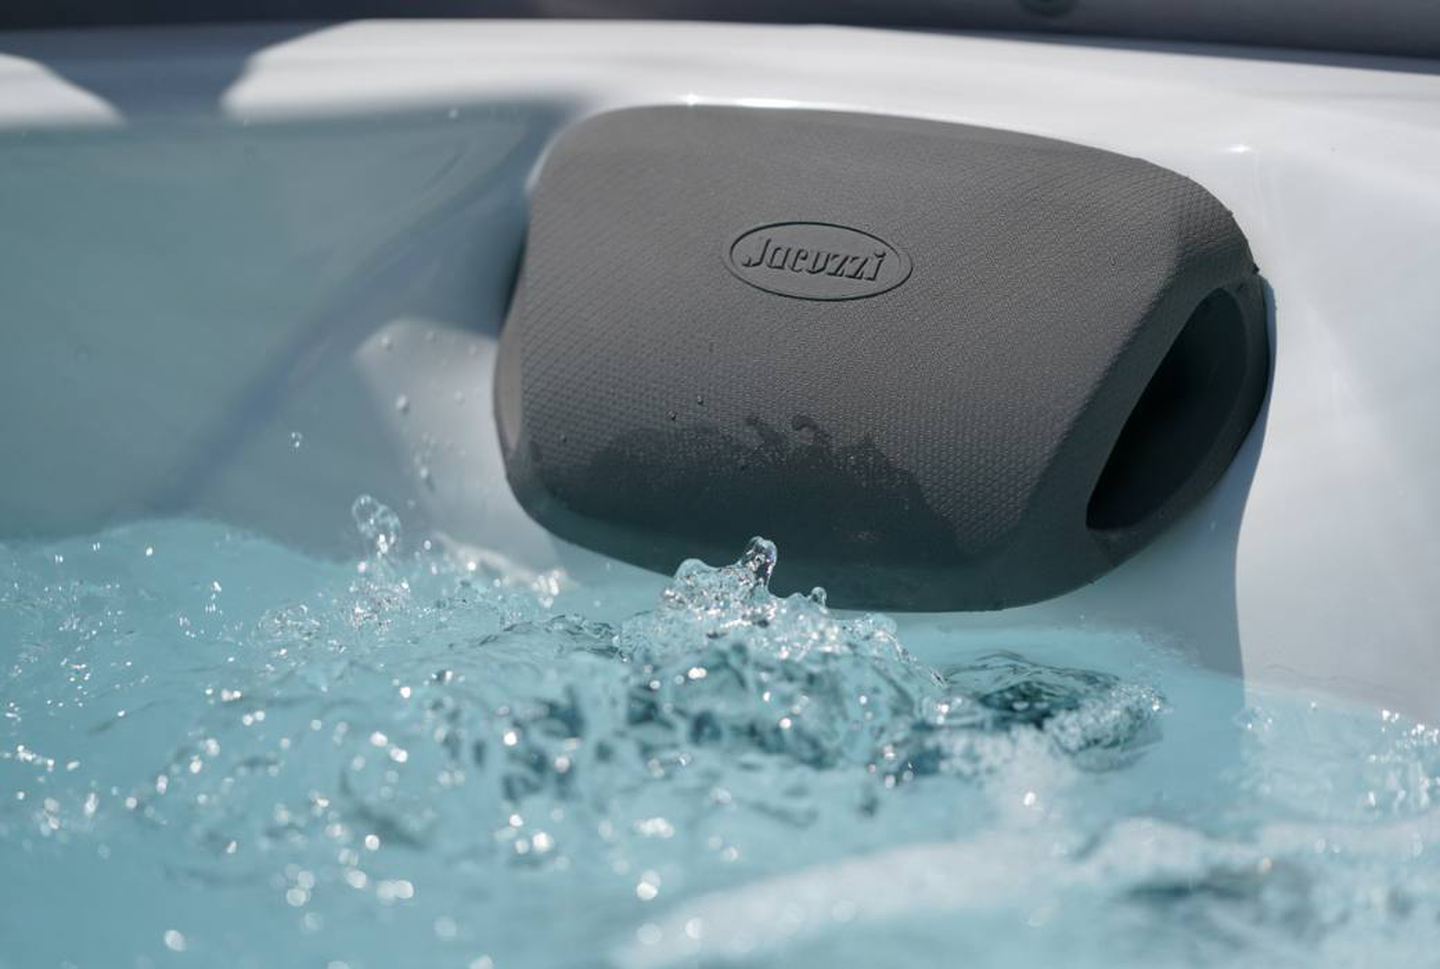 Jacuzzi® hot tub: duração ideal da banheira e temperatura óptima